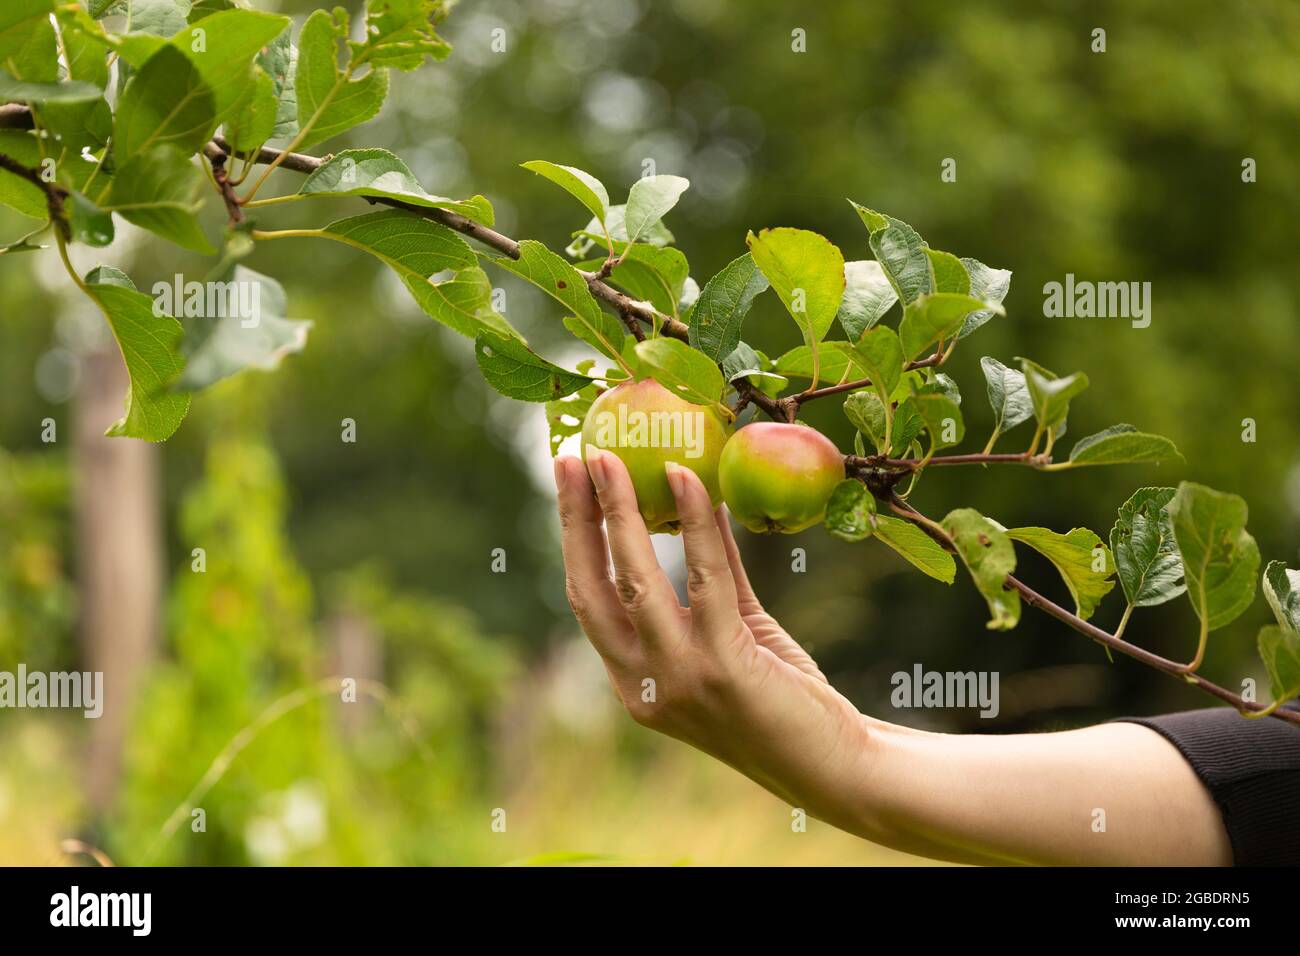 Weibliche Hand pflücken einen reifen frischen Apfel von einem Apfelbaum genießen ihre gesunde vegane Lebensweise, während sie von Grün und Bäumen auf einem sonnigen umgeben Stockfoto